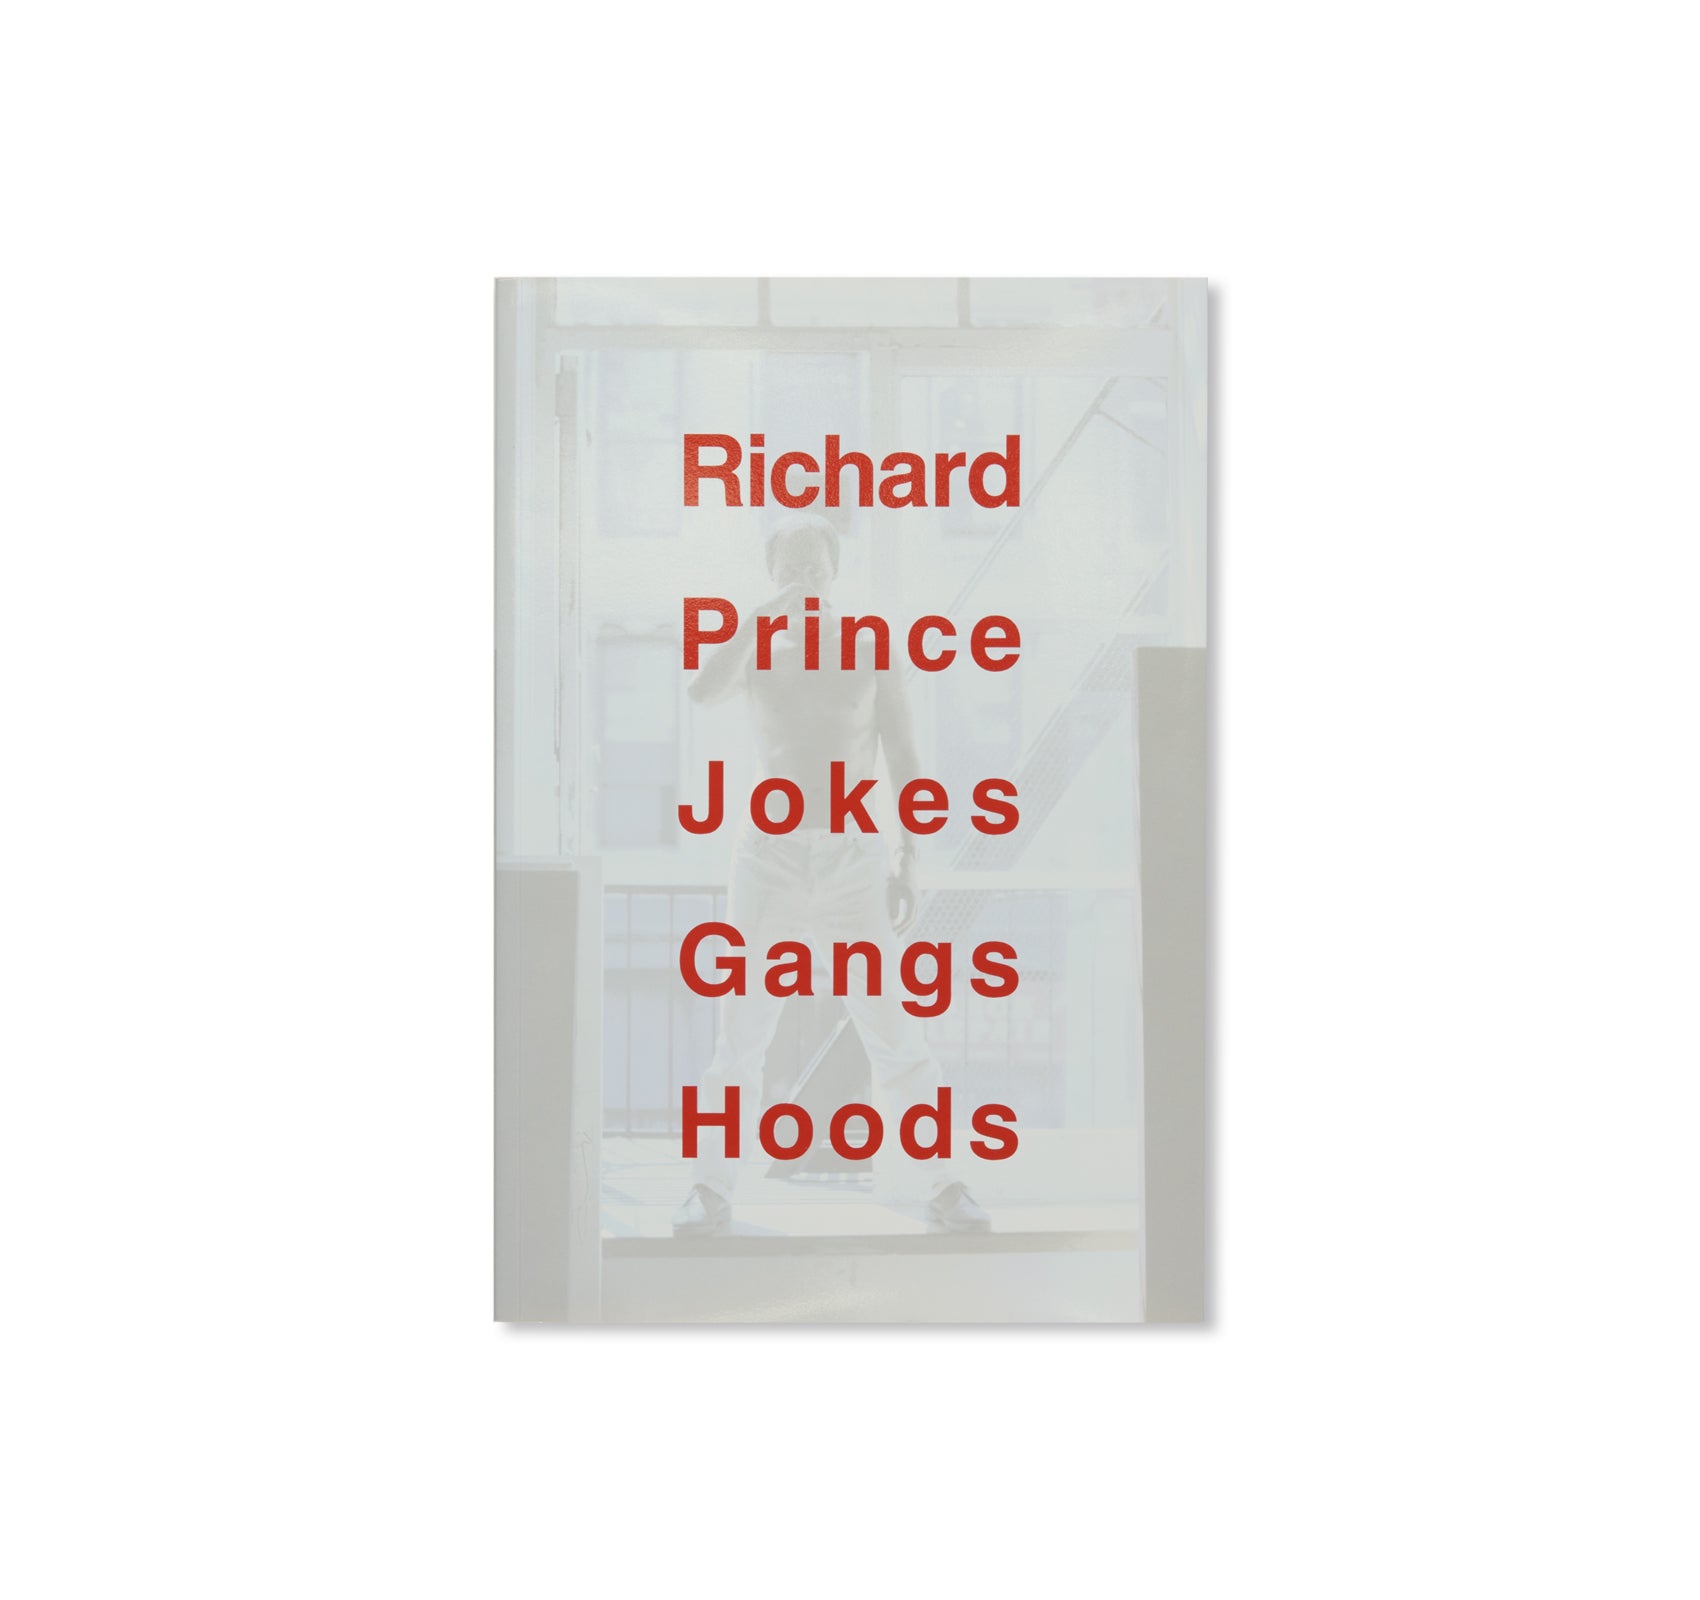 JOKES GANGS HOODS by Richard Prince